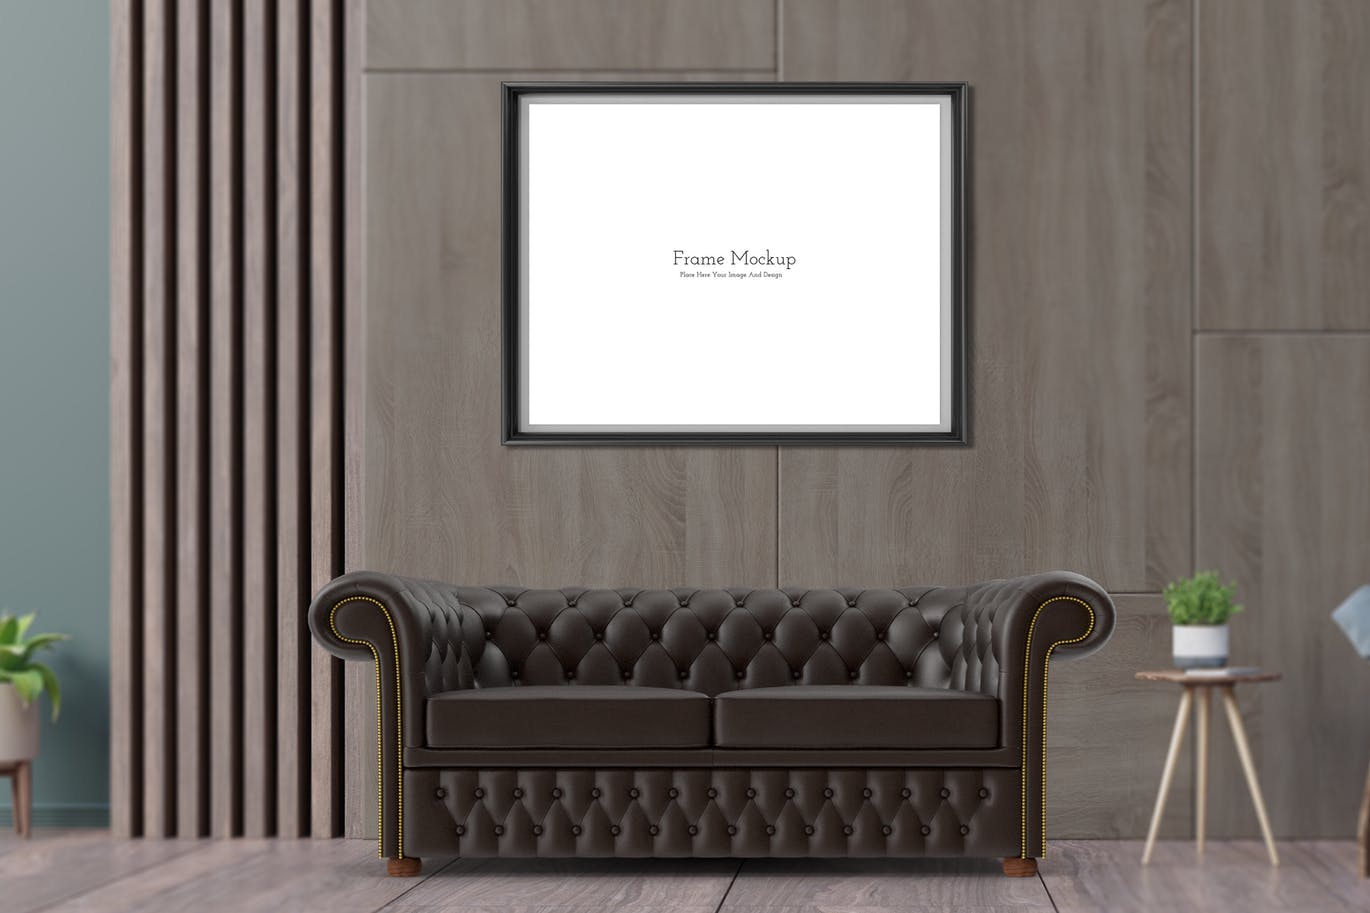 沙发客厅场景墙体作品框架样机模板 (PSD)